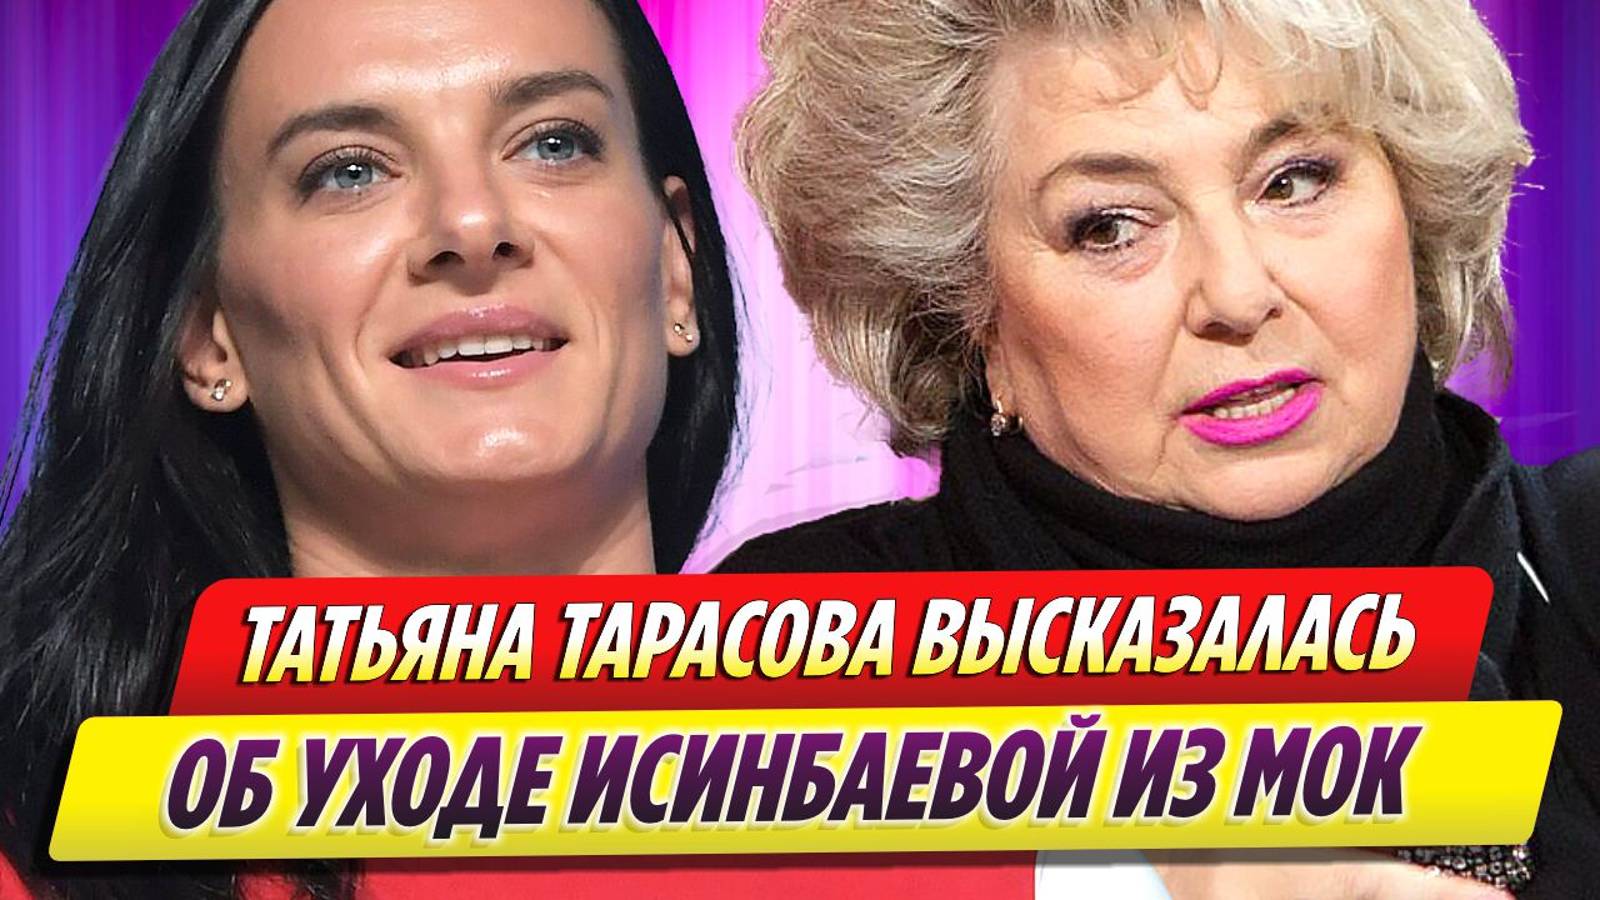 Татьяна Тарасова об уходе Елены Исинбаевой из МОК